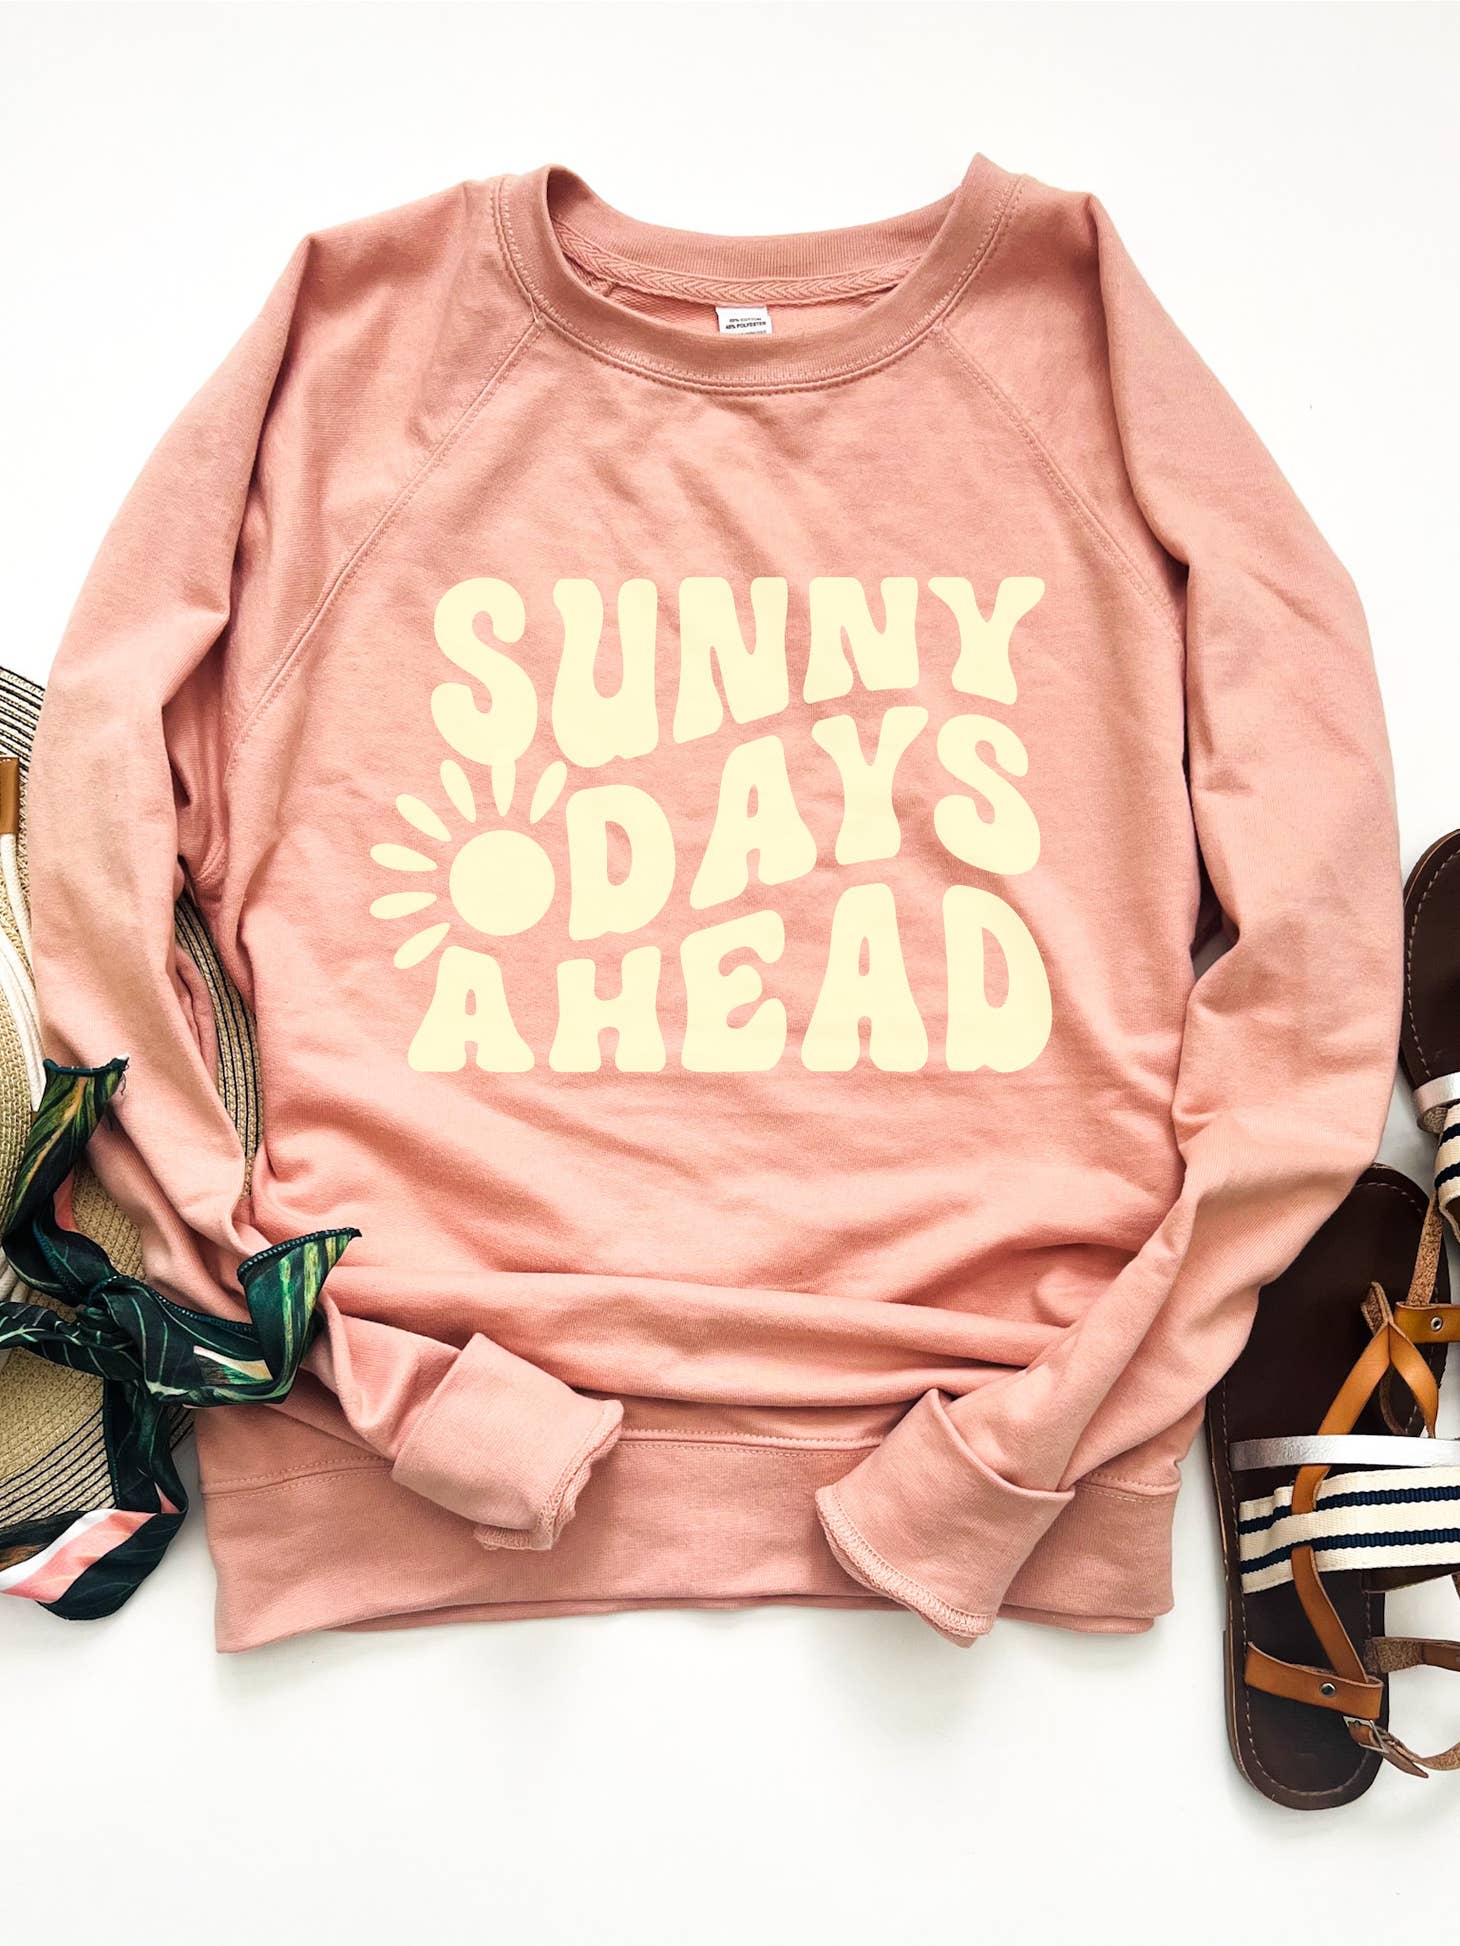 Sunny Days Ahead Sweatshirt